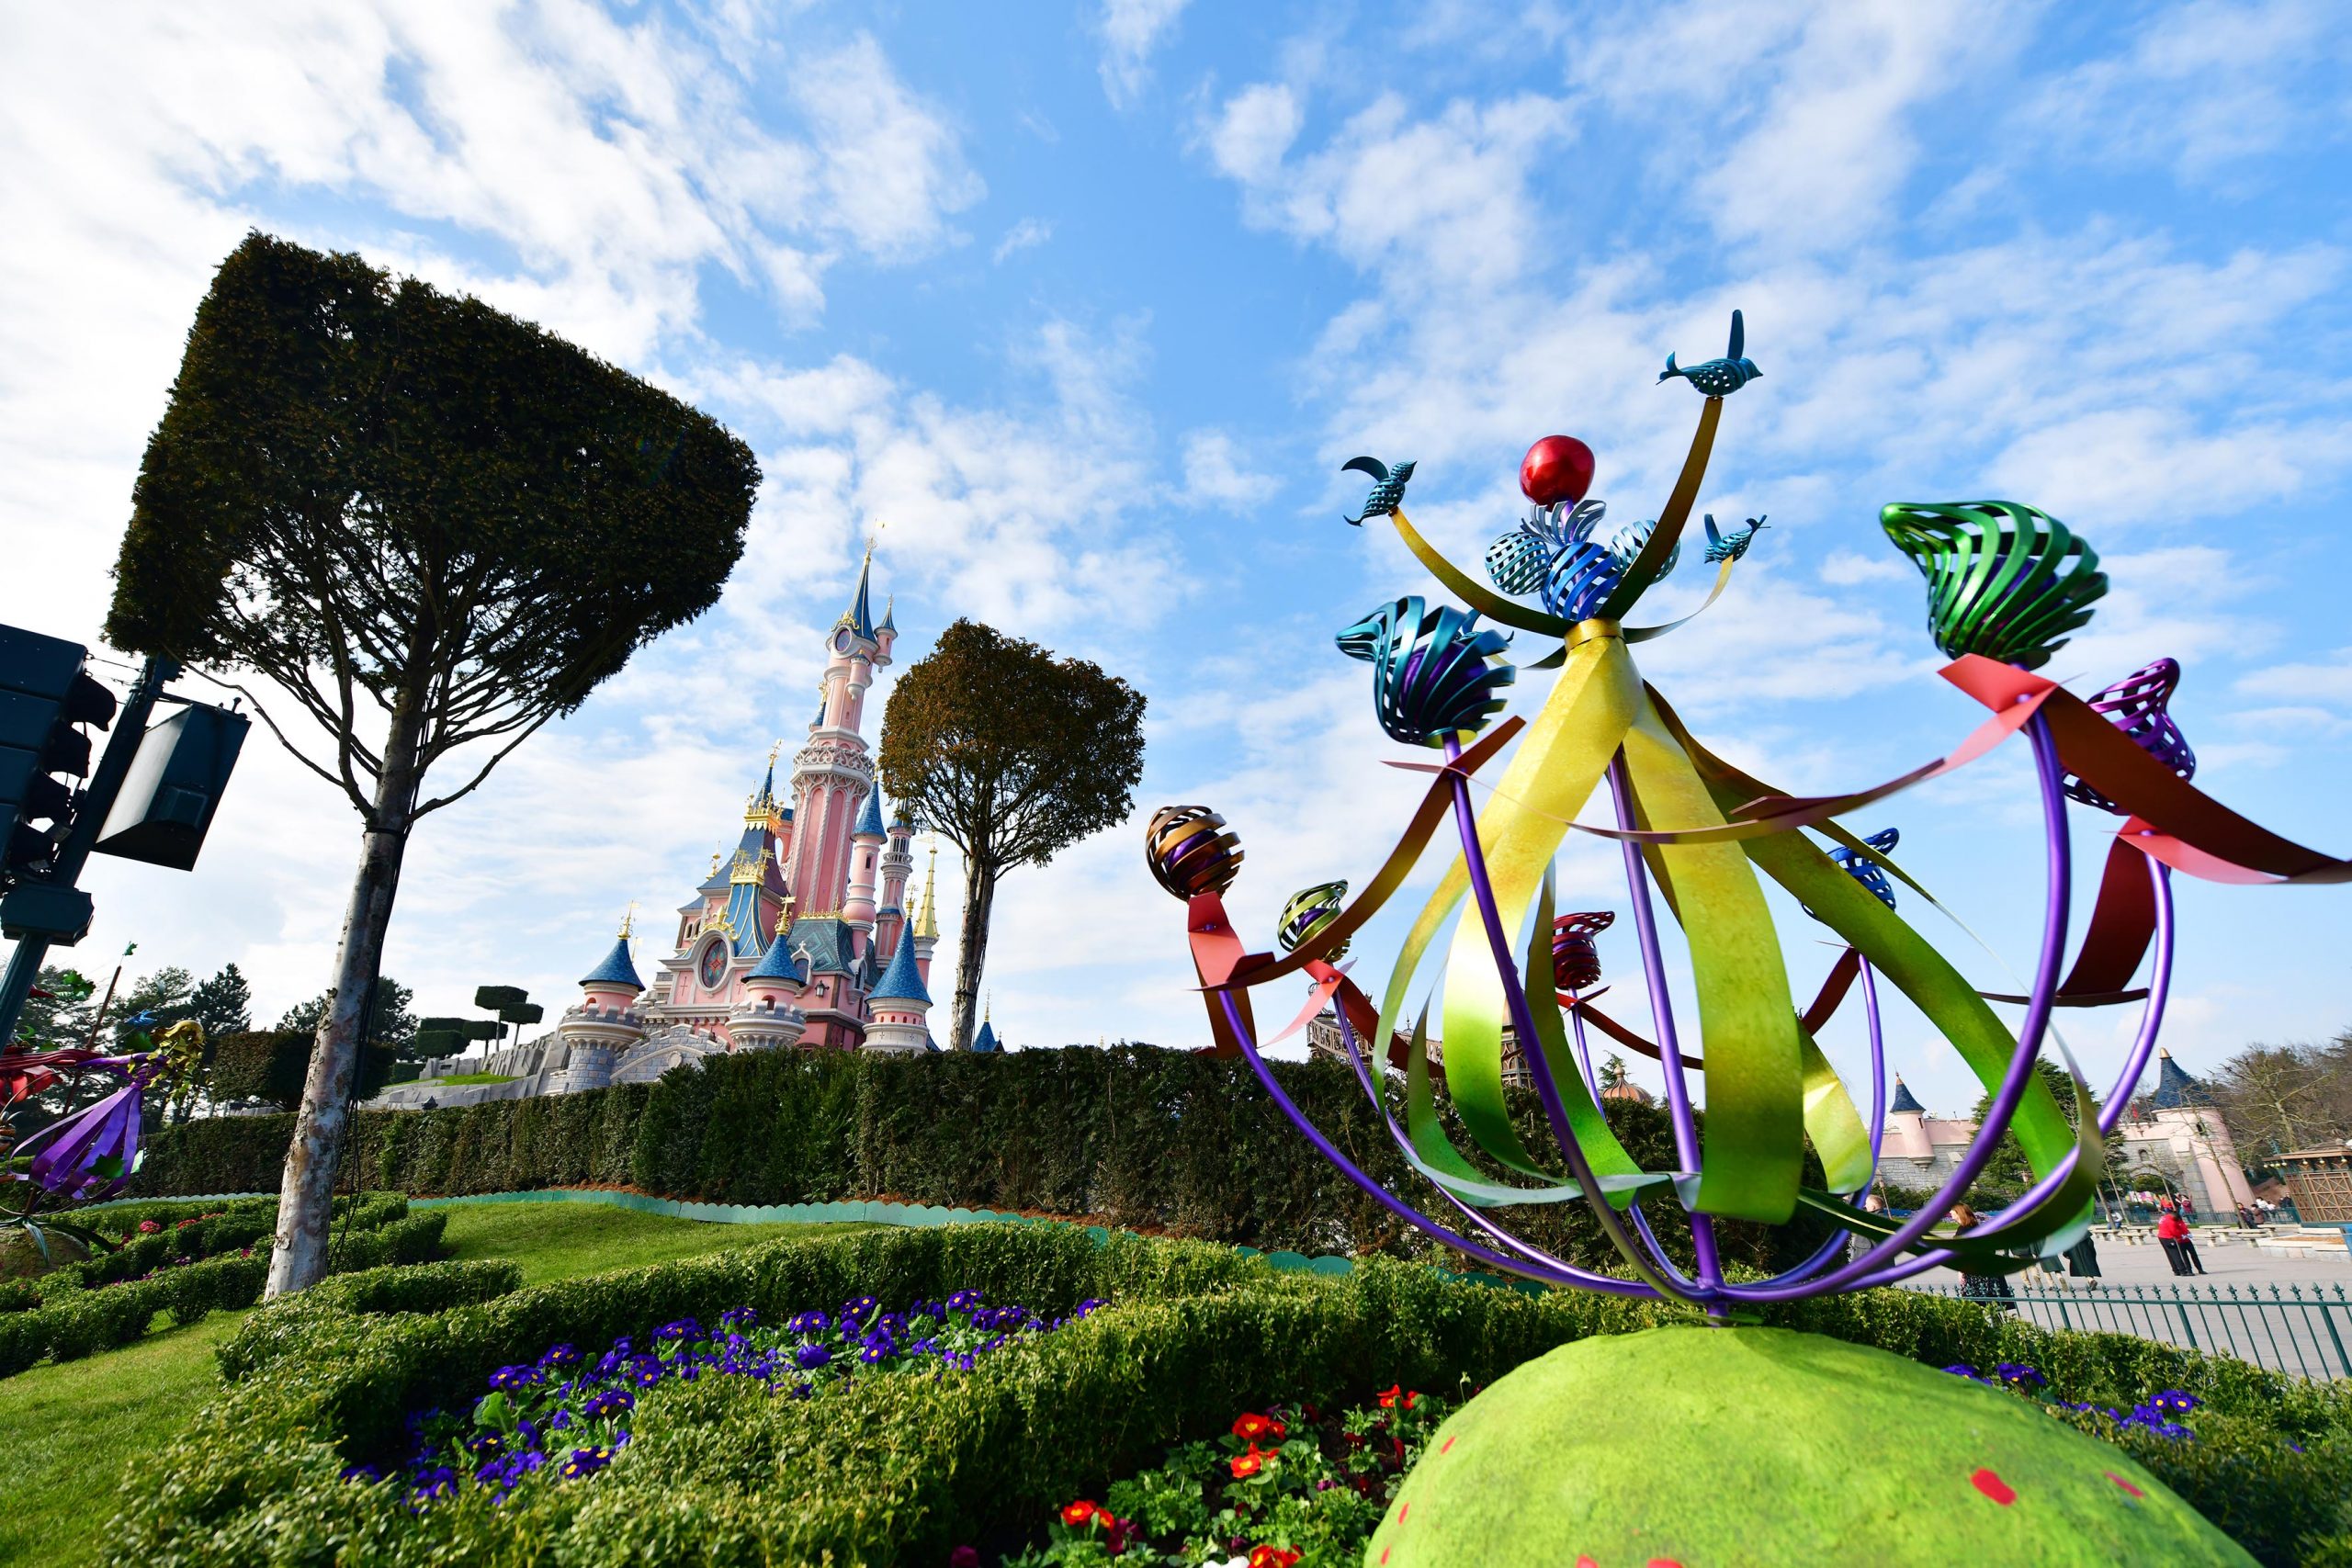 Disneyland Paris News on X: Grâce aux WEB Power Bands, les